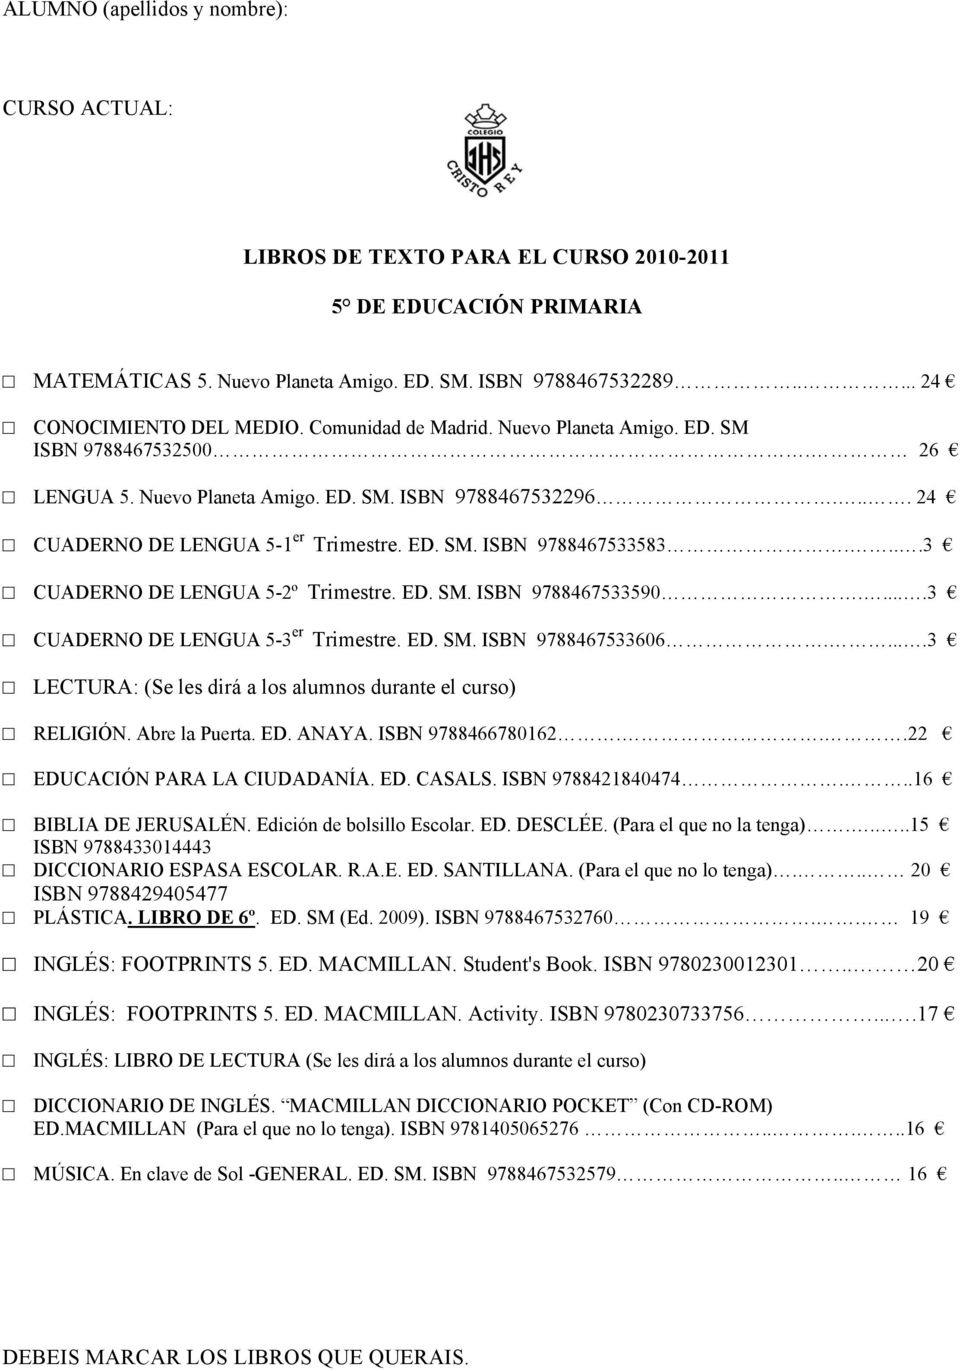 ....3 CUADERNO DE LENGUA 5-3 er Trimestre. ED. SM. ISBN 9788467533606.....3 RELIGIÓN. Abre la Puerta. ED. ANAYA. ISBN 9788466780162...22 EDUCACIÓN PARA LA CIUDADANÍA. ED. CASALS. ISBN 9788421840474.